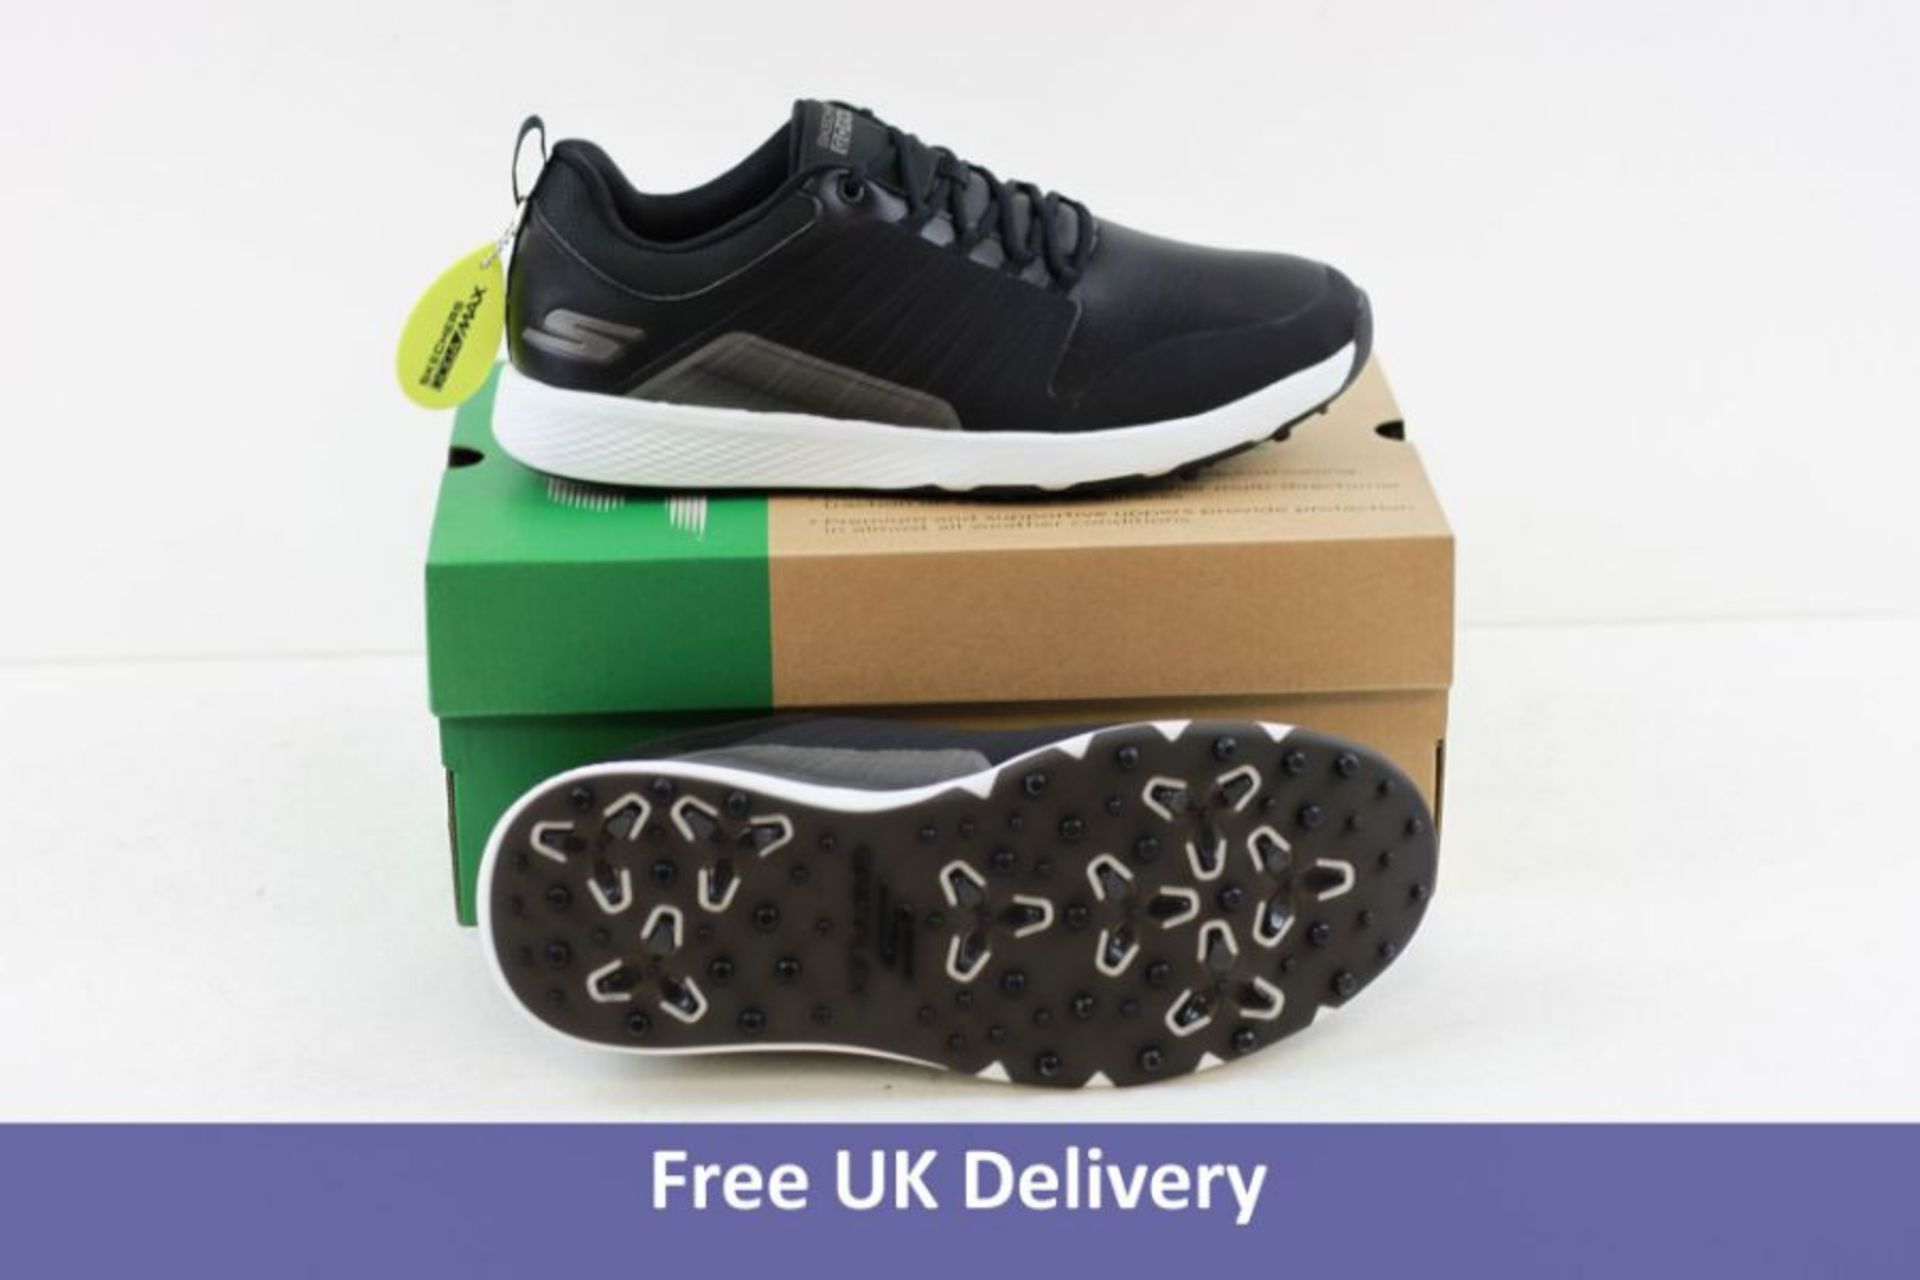 Skechers Men's Go Golf Elite Shoes, Black and White, UK 7